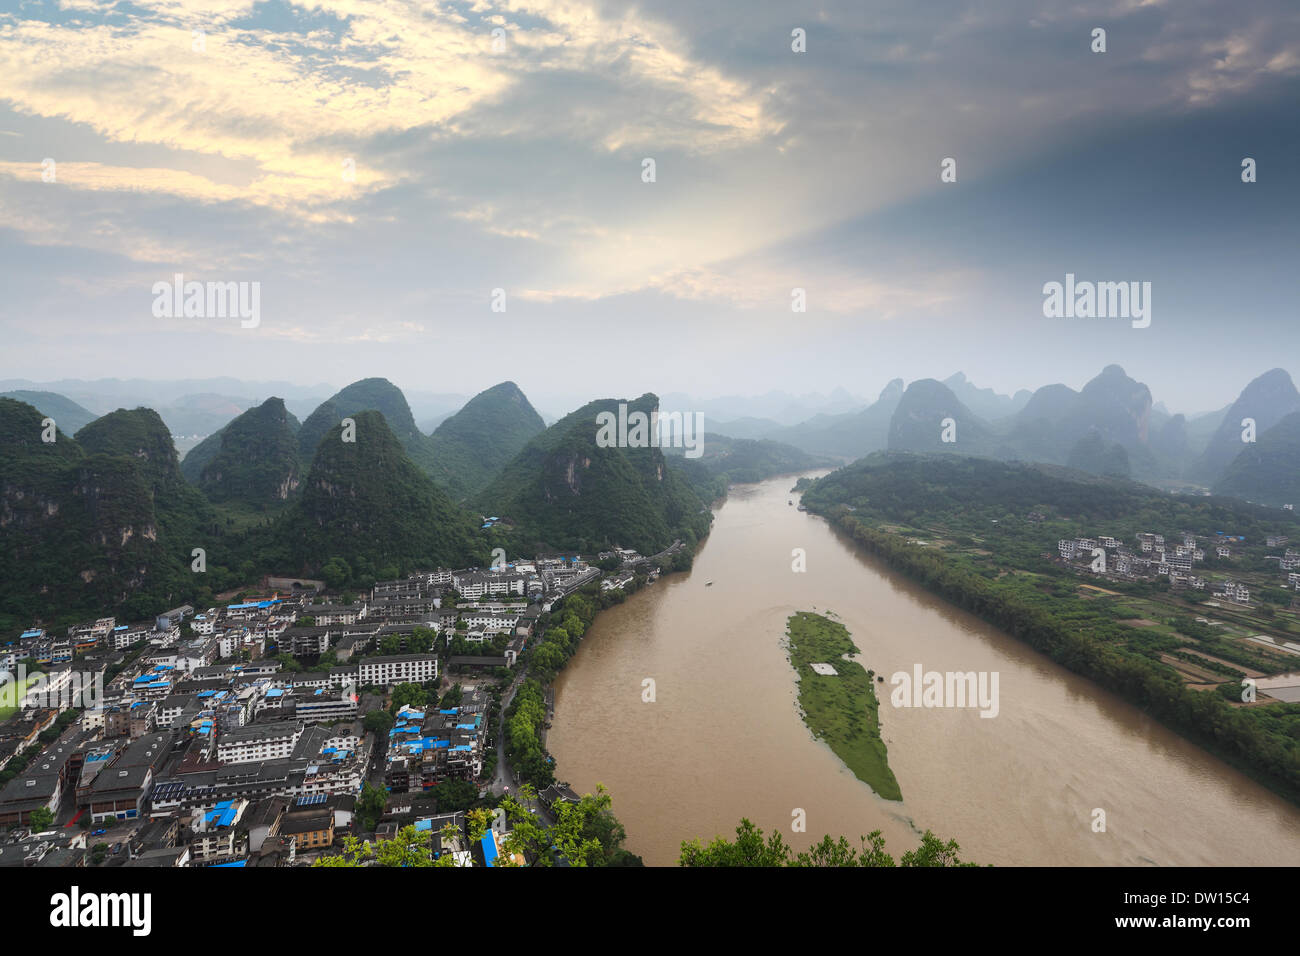 karst landform and lijiang river at sunrise Stock Photo